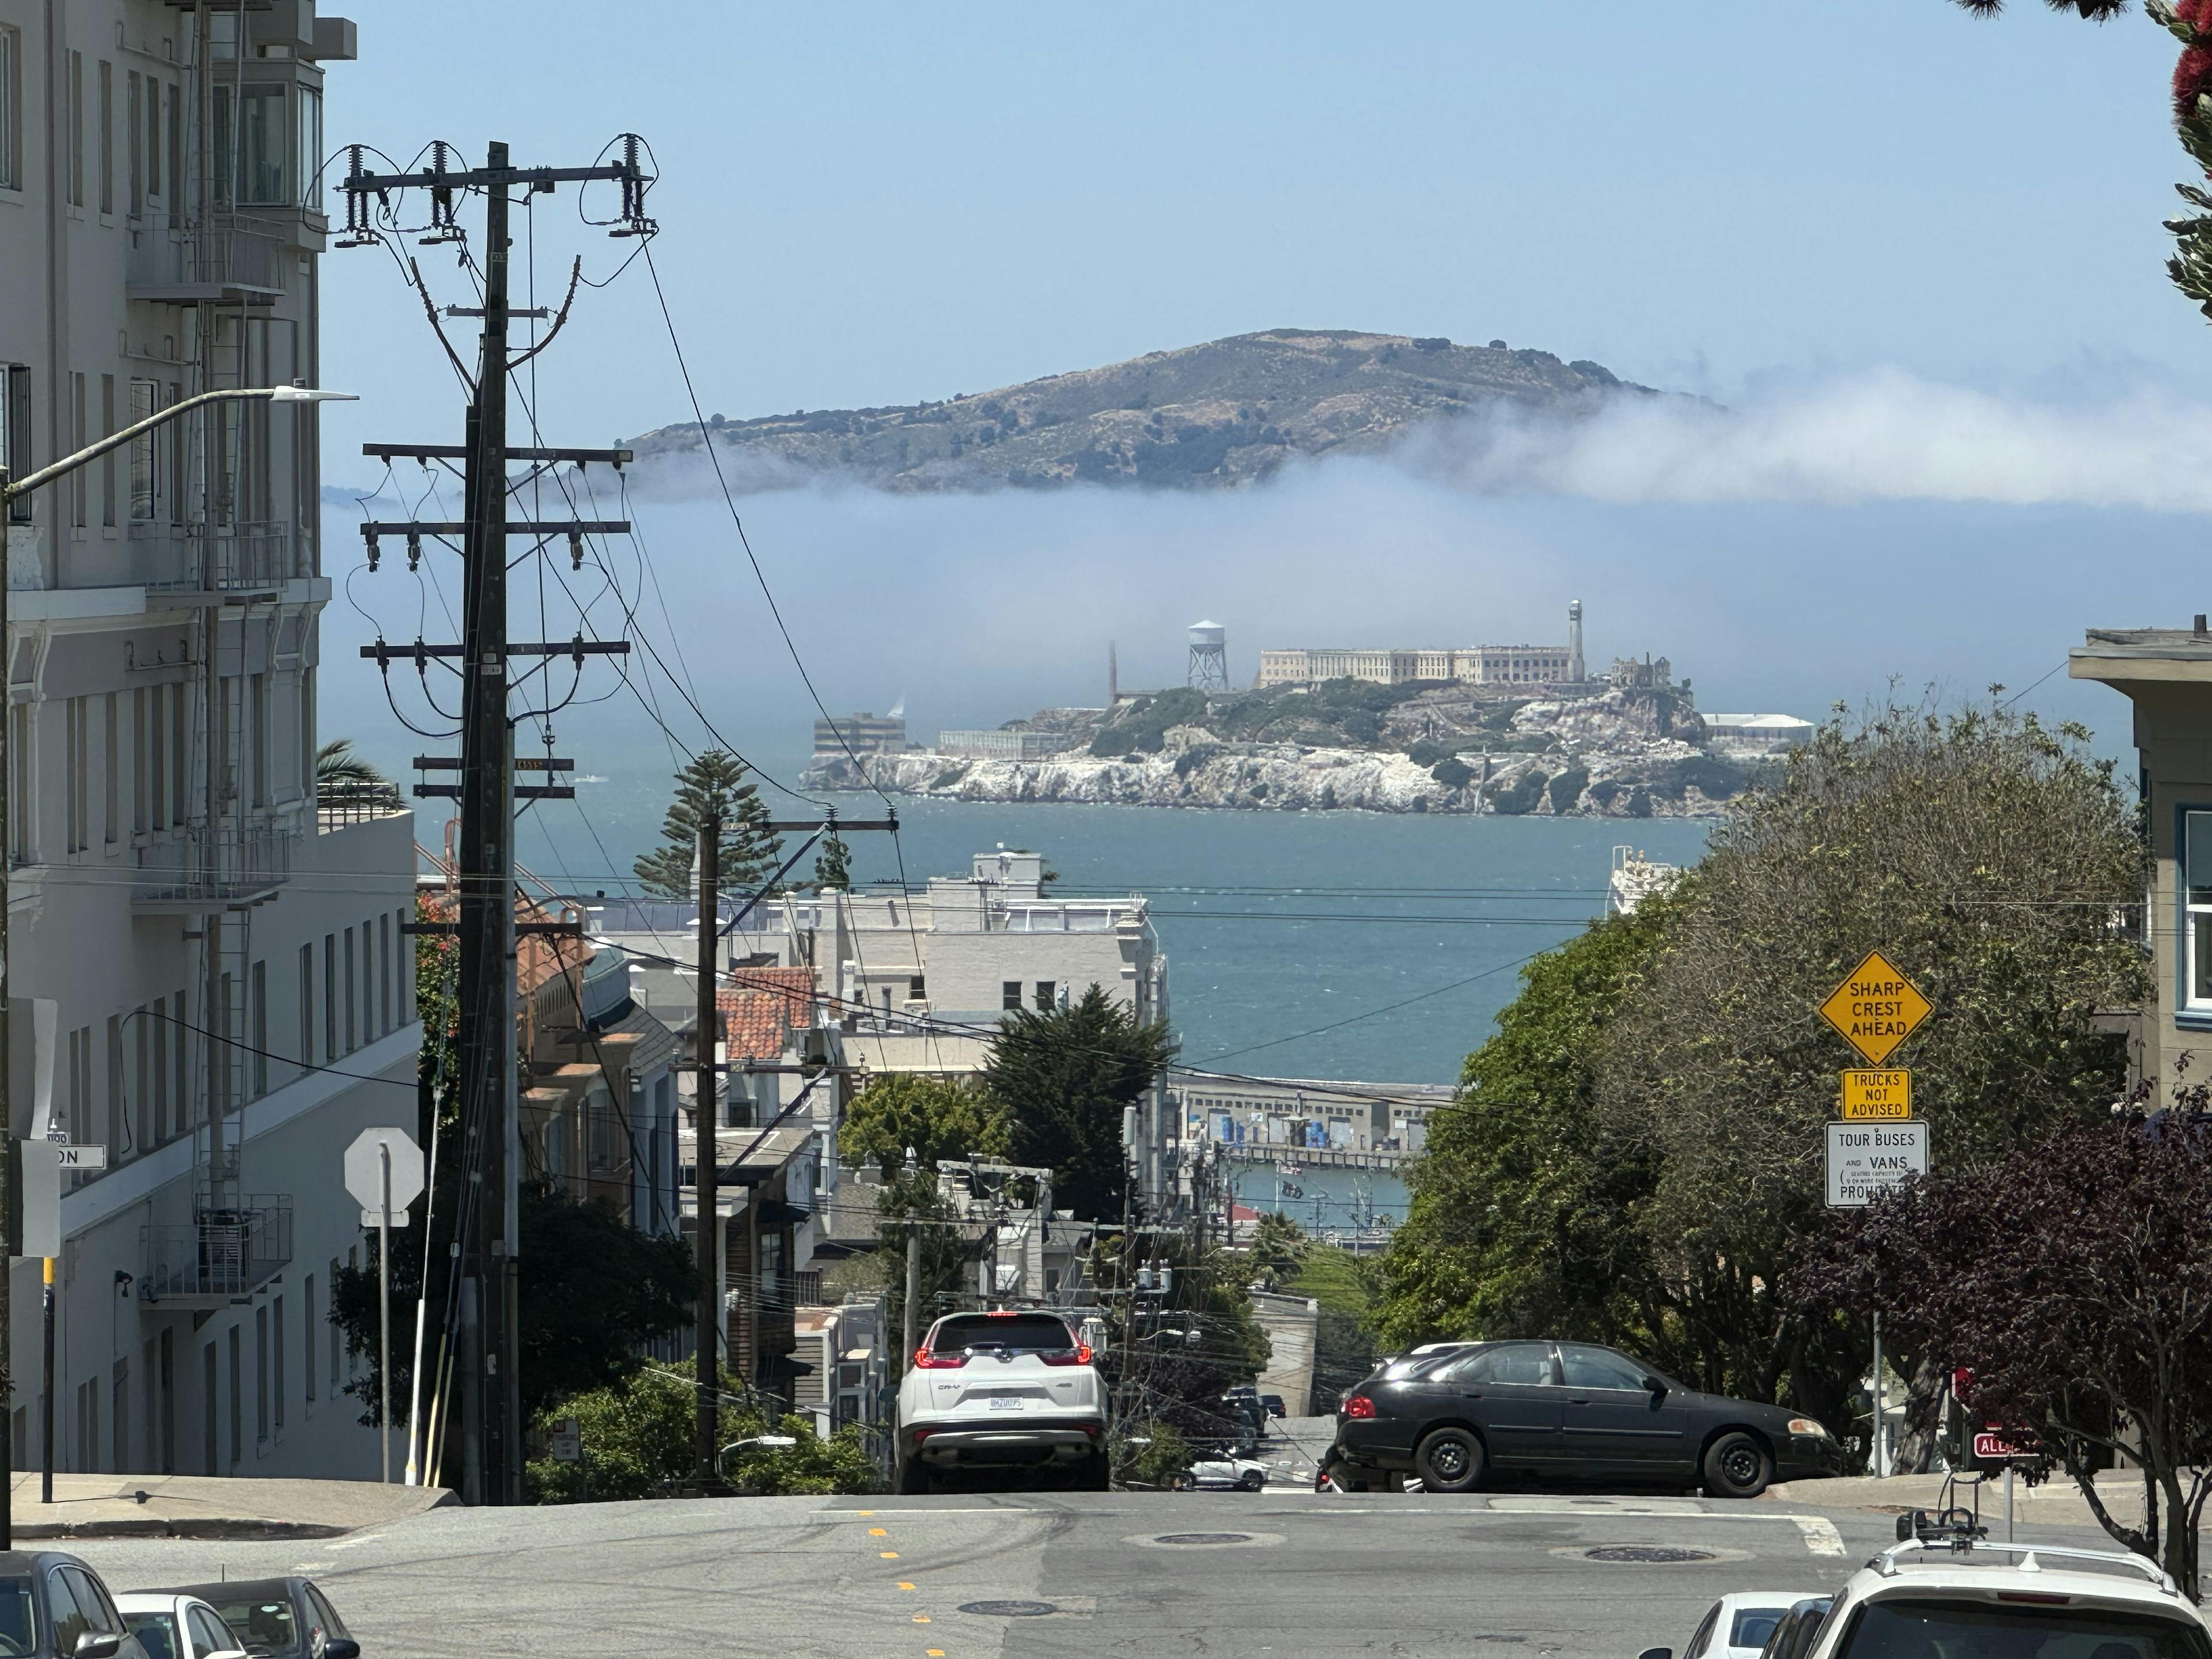 SF and Alcatraz